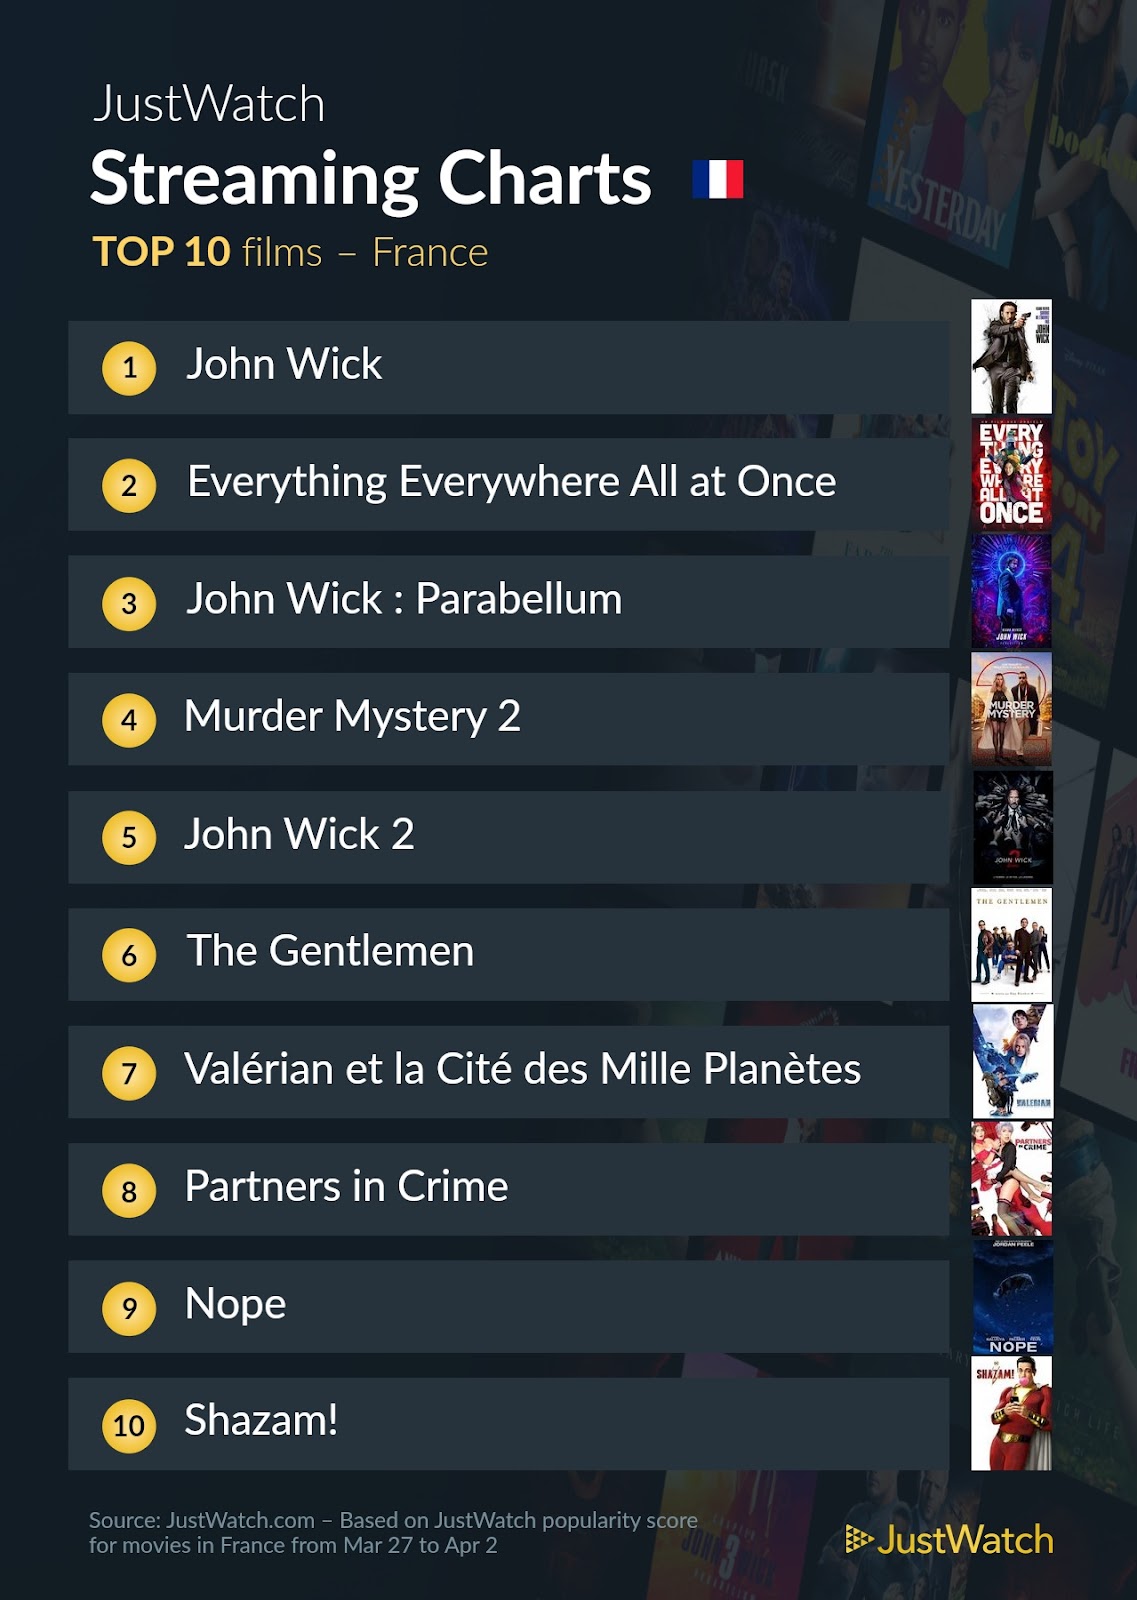 Le top streaming cinéma / séries: "John Wick" et "Succession" au top cette semaine !